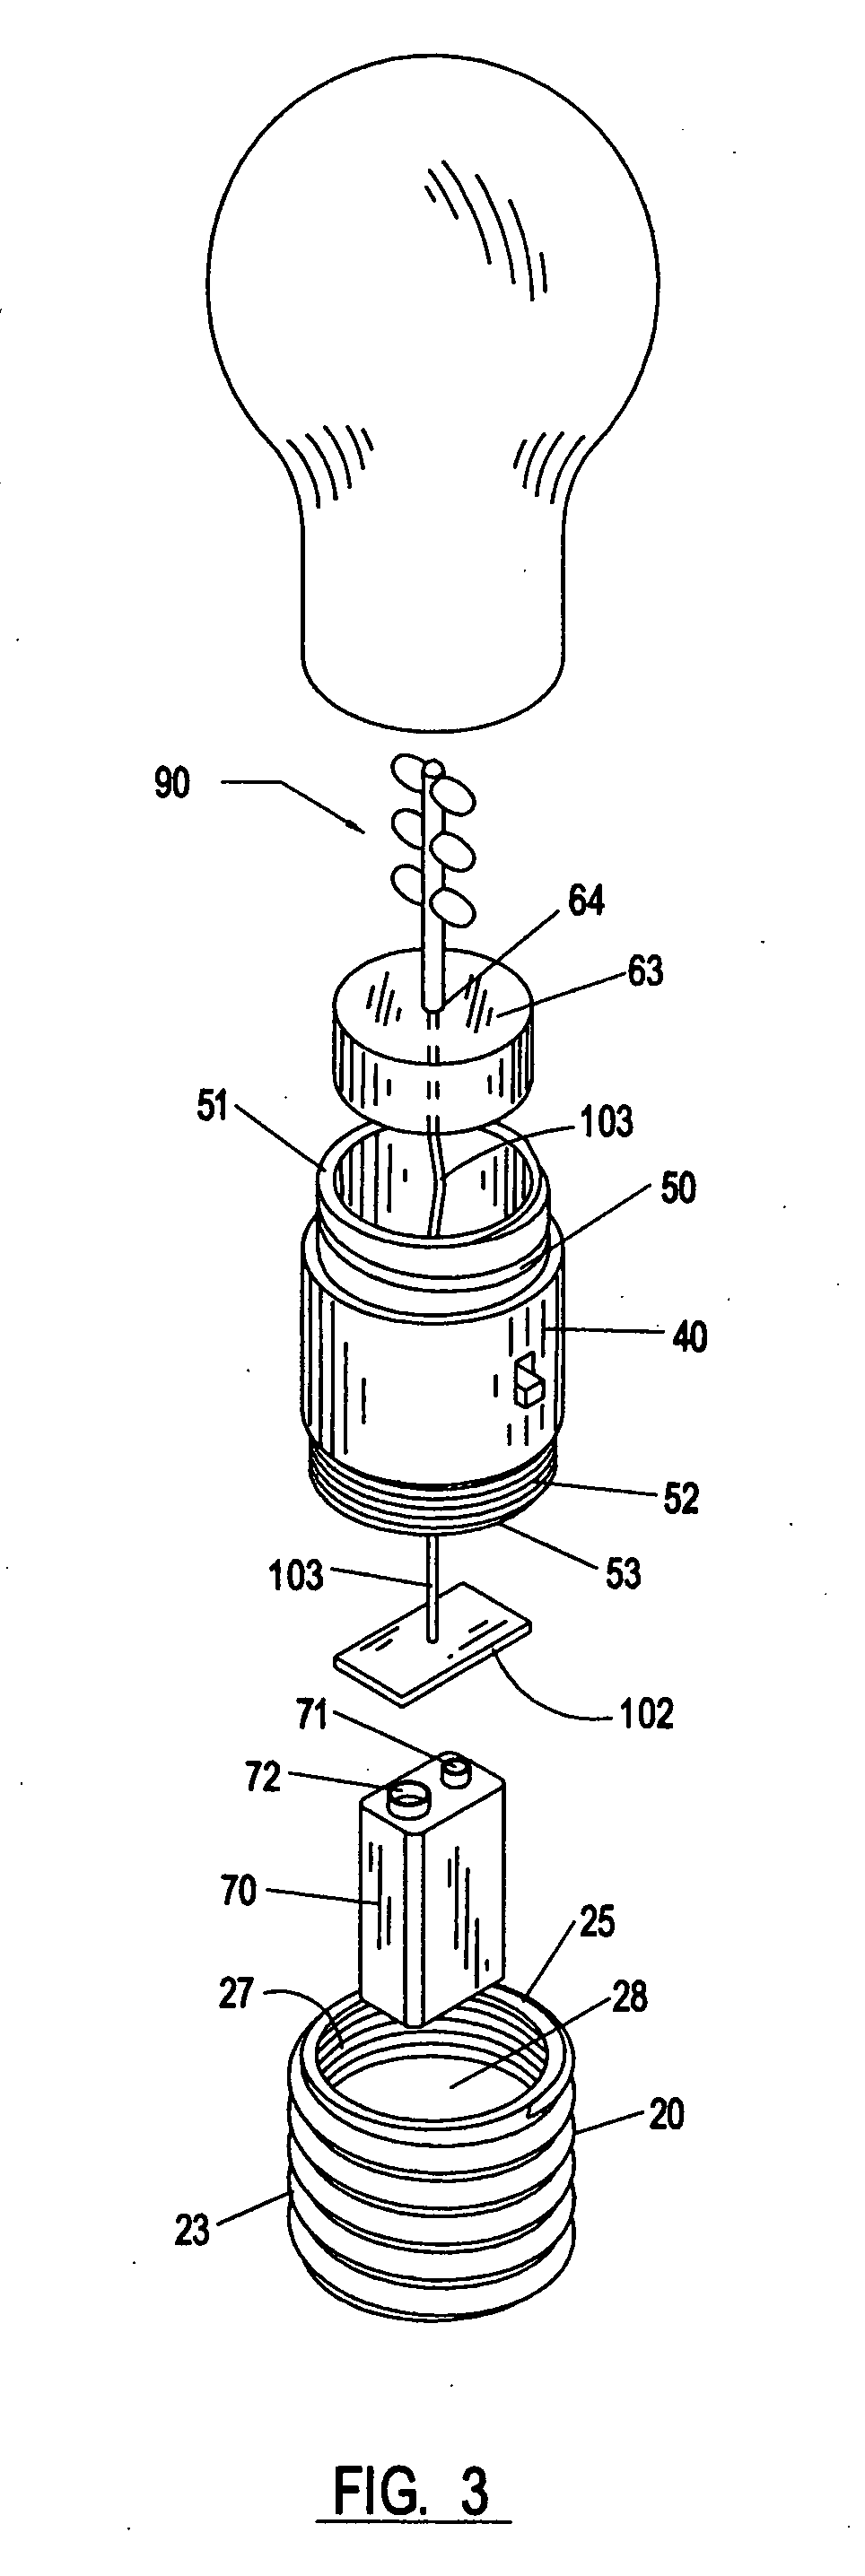 Illumination apparatus